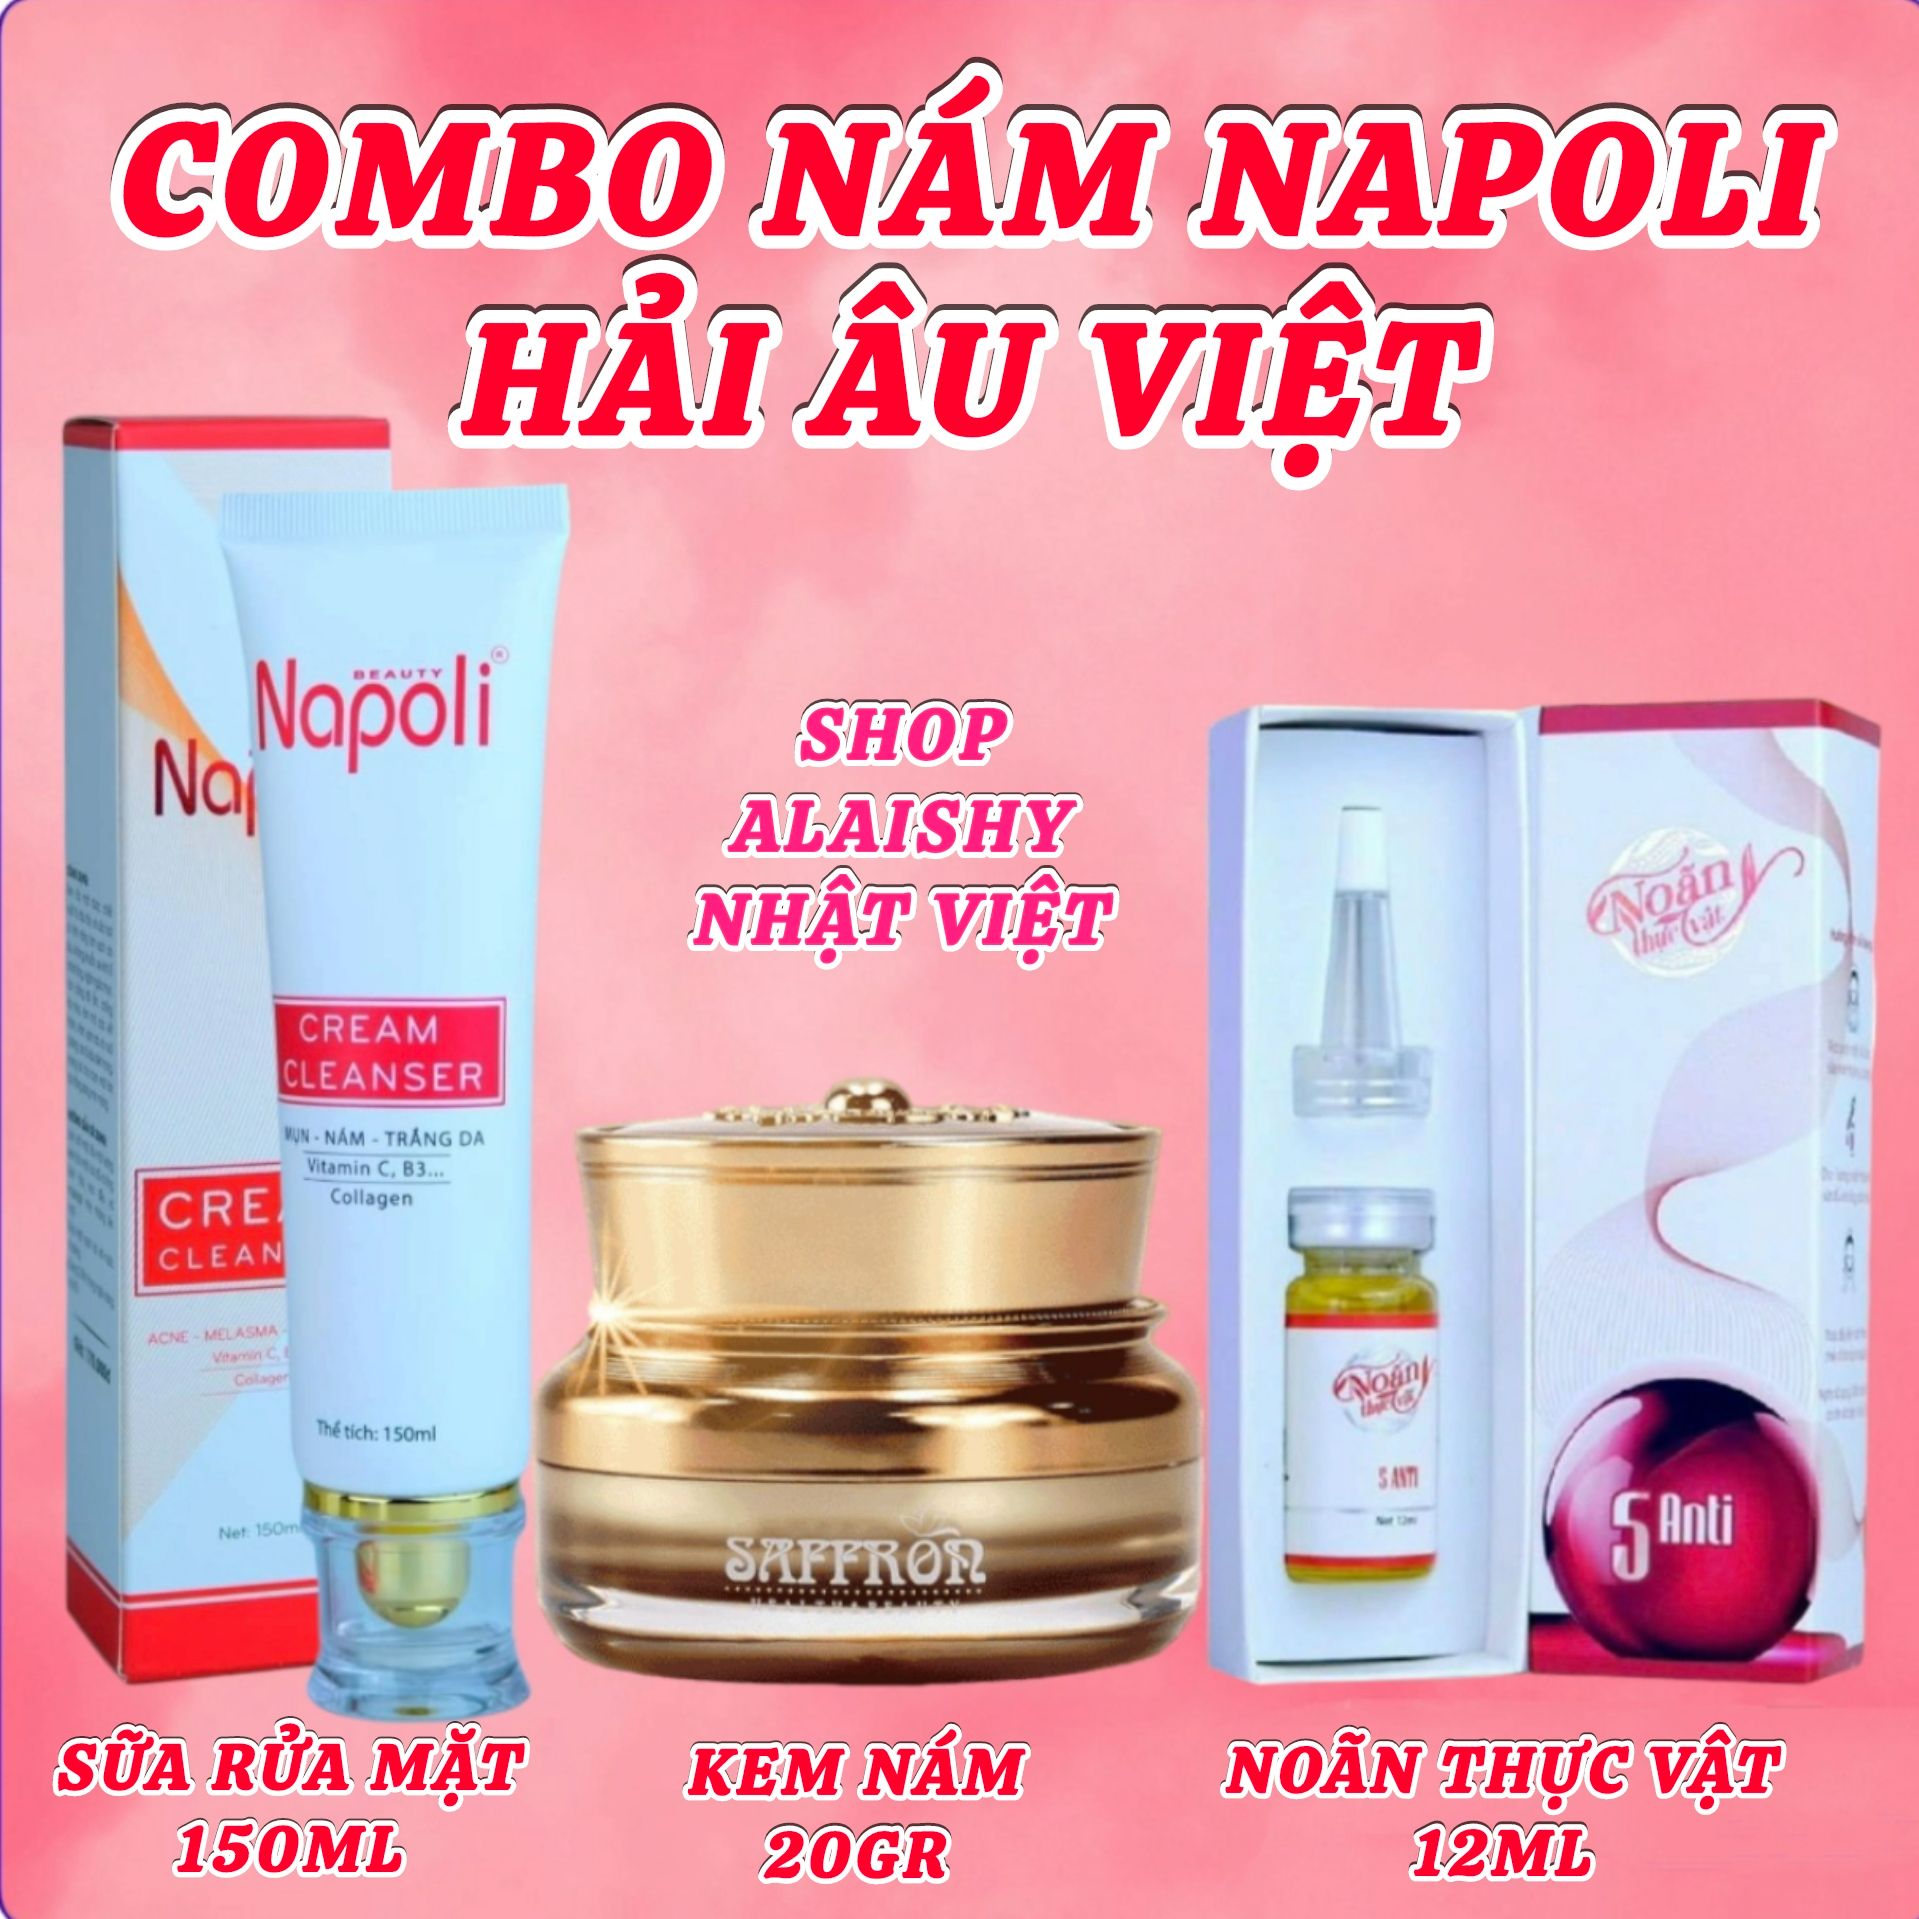 [chính hãng 100%] Combo Nám Napoli Hải Âu Việt - Kem Nám SAFFRON 20g + Noãn Thực Vật + Sữa Rửa Mặt Napoli